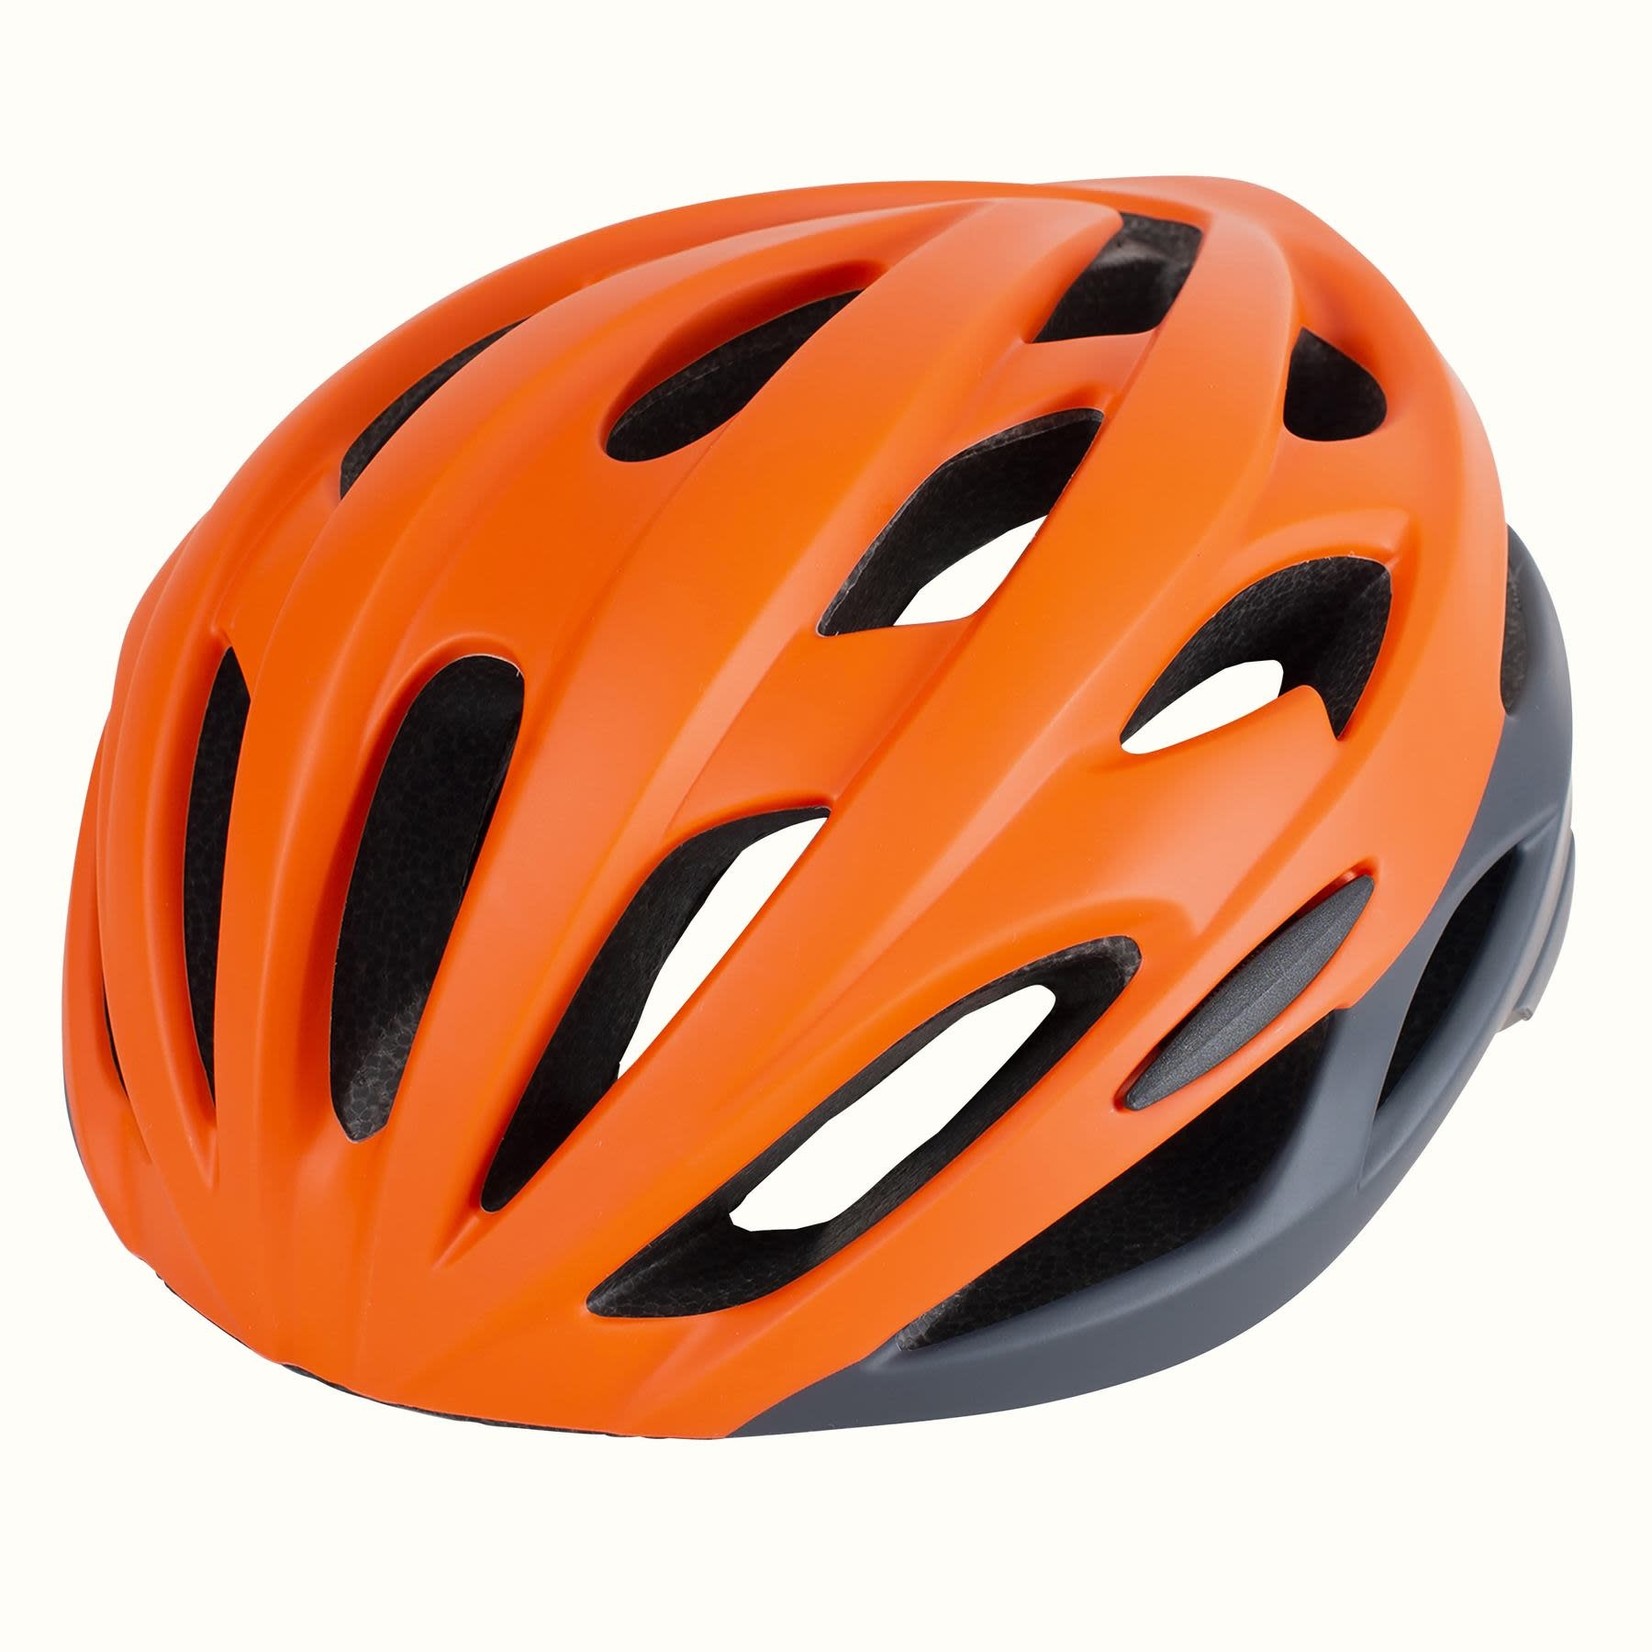 Retrospec Silas Bike Helmet